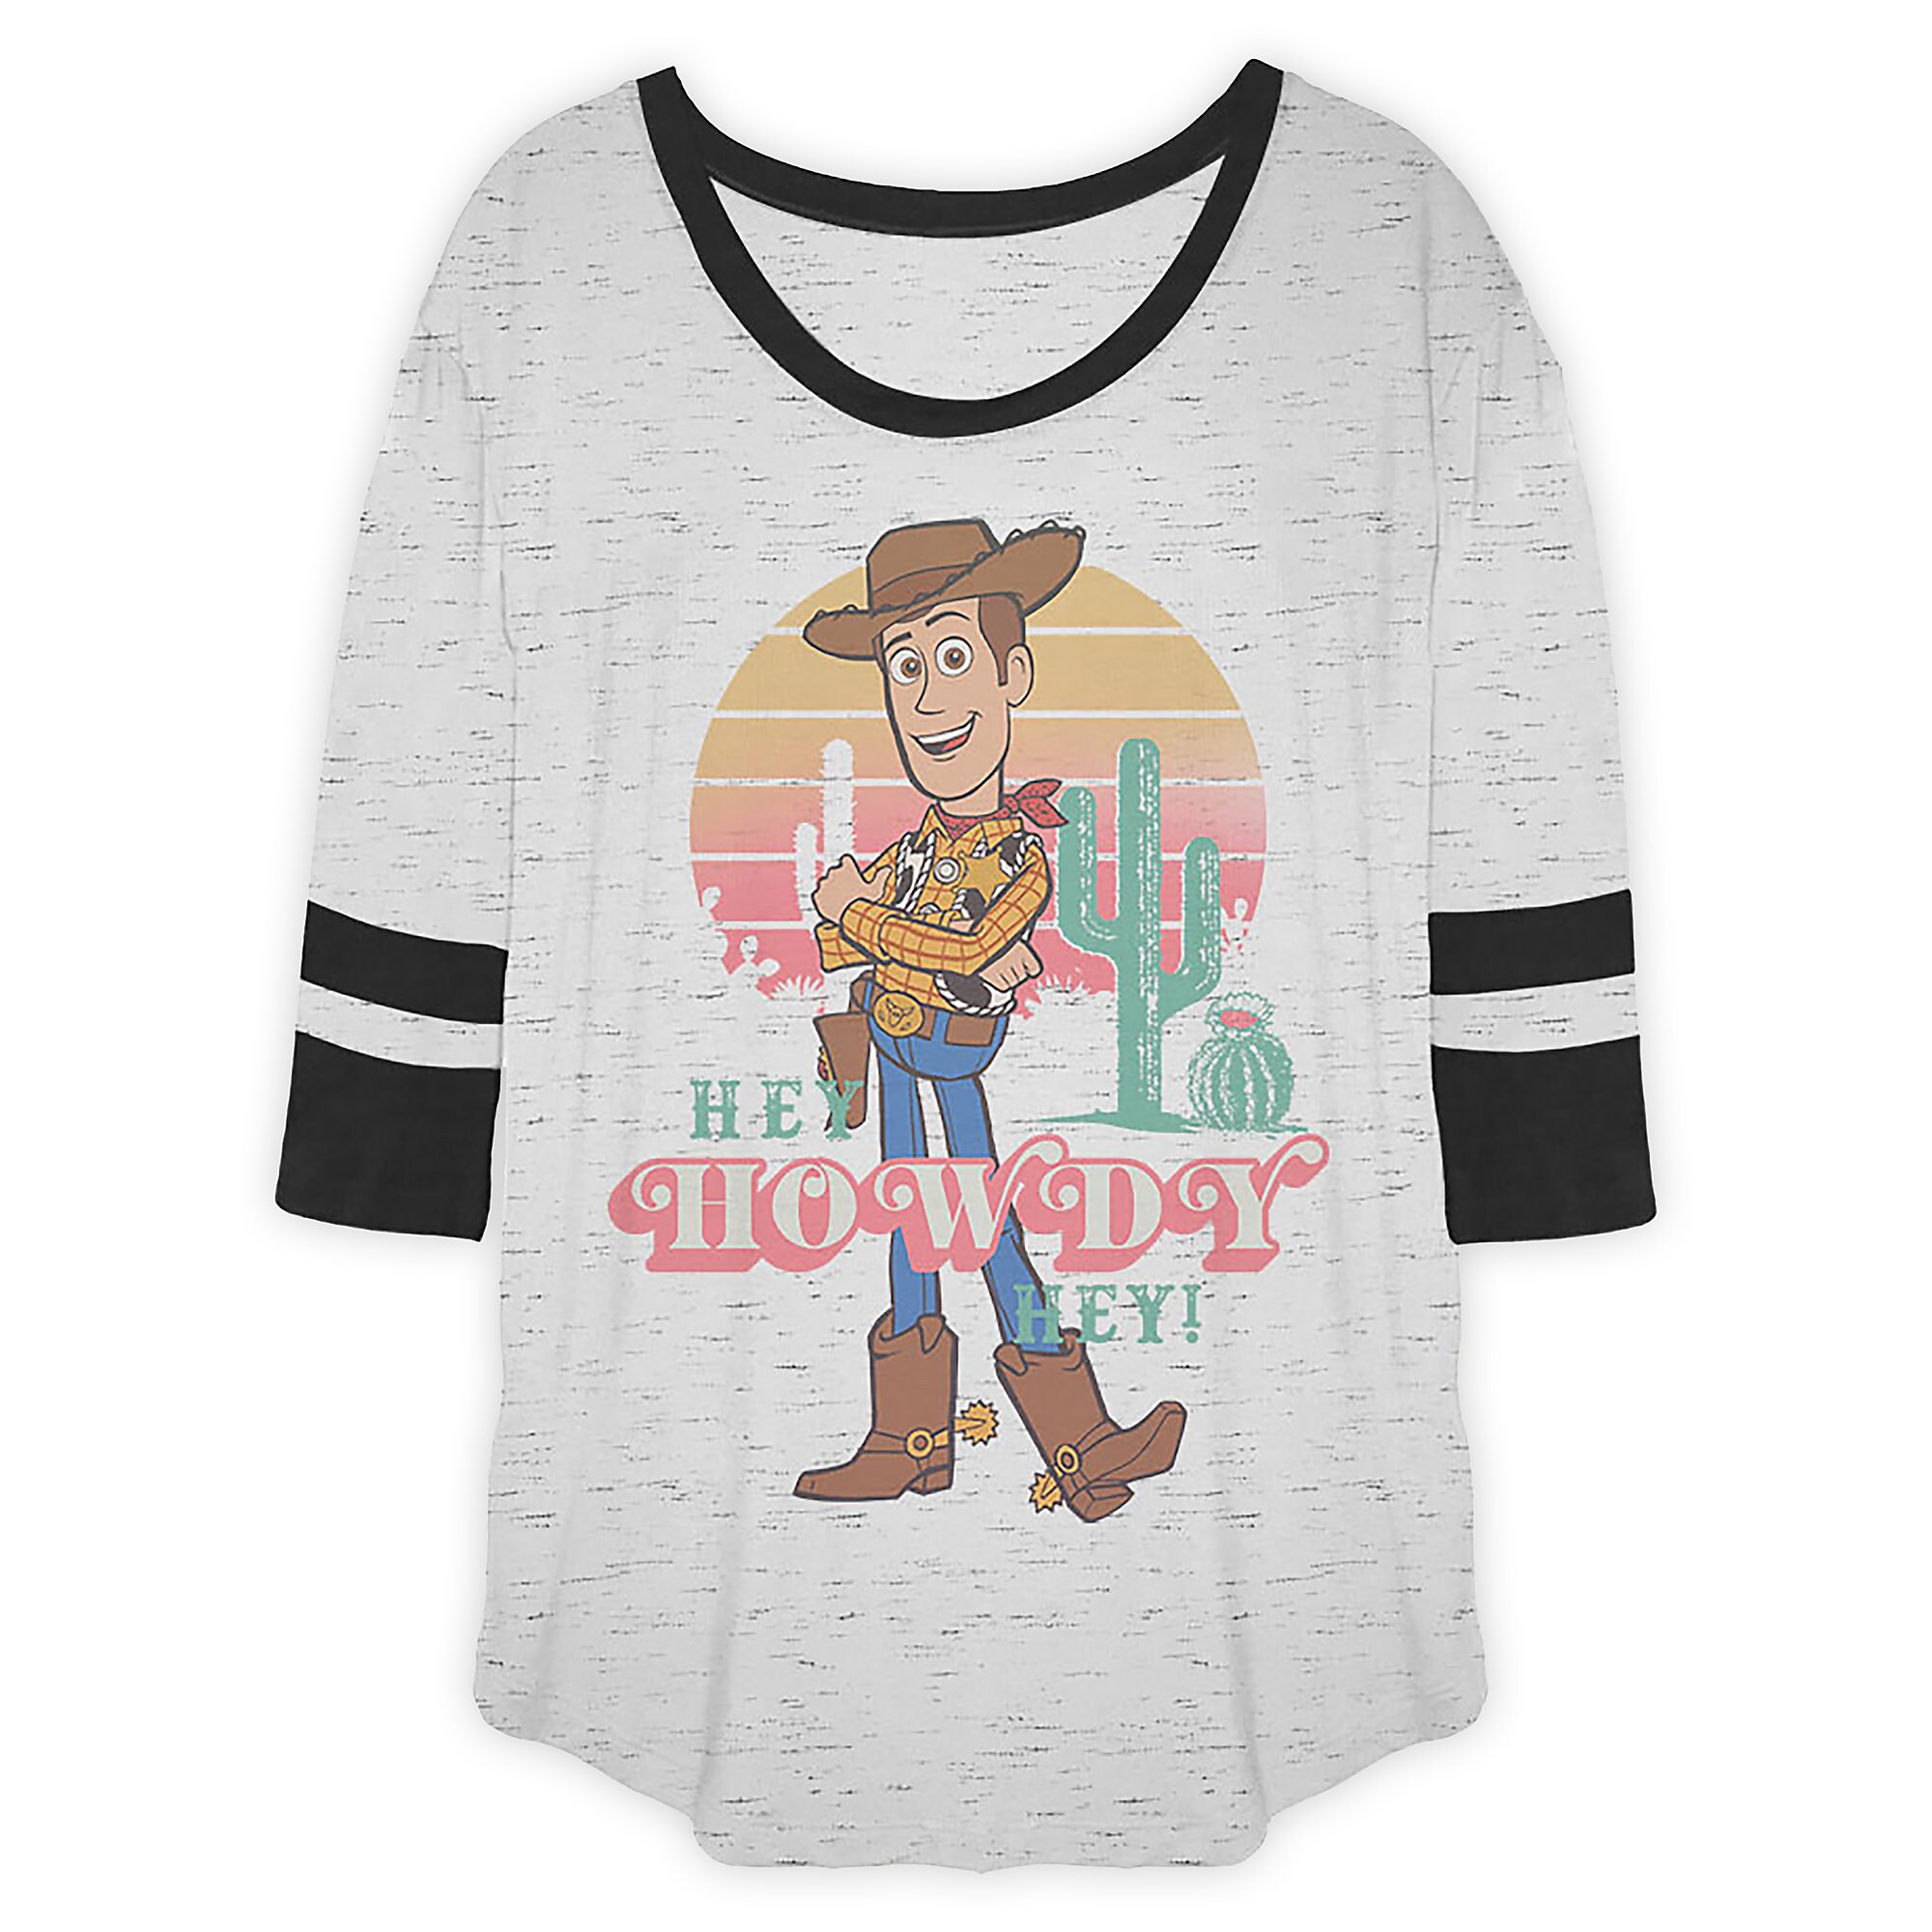 Woody ''Hey Howdy Hey!'' Shirt for Women